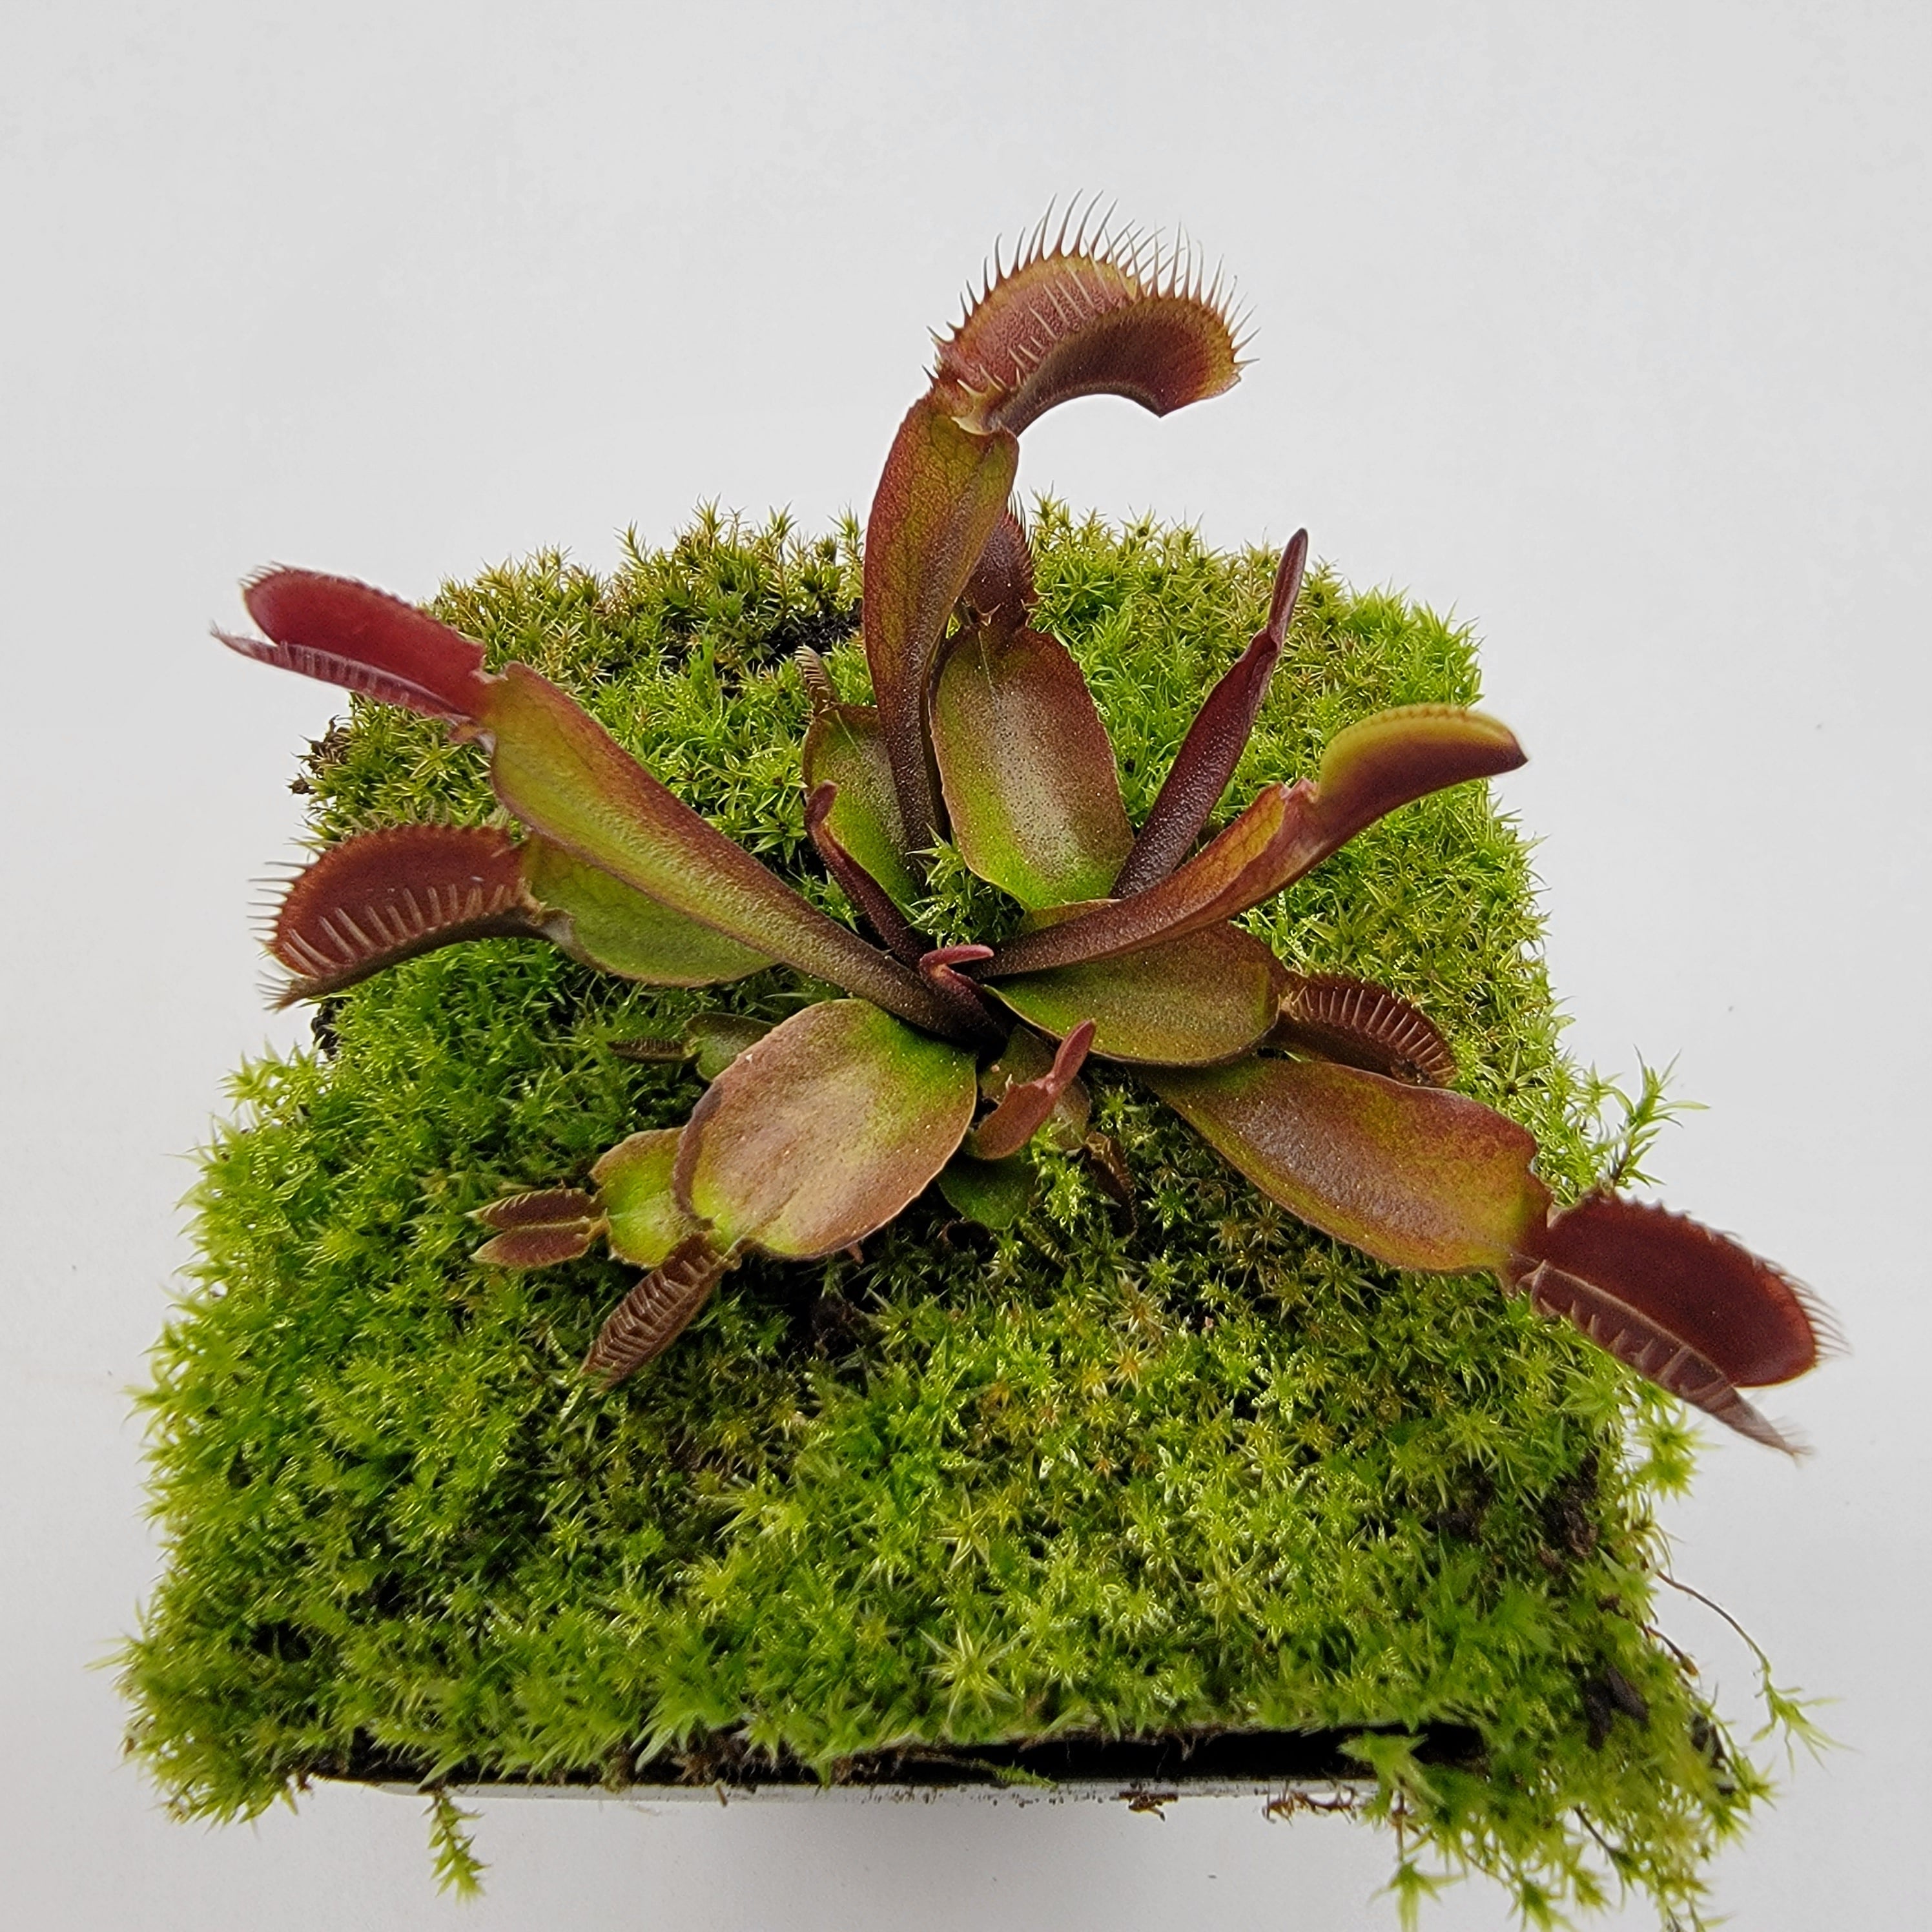 Venus flytrap (Dionaea muscipula) - Plantsmith